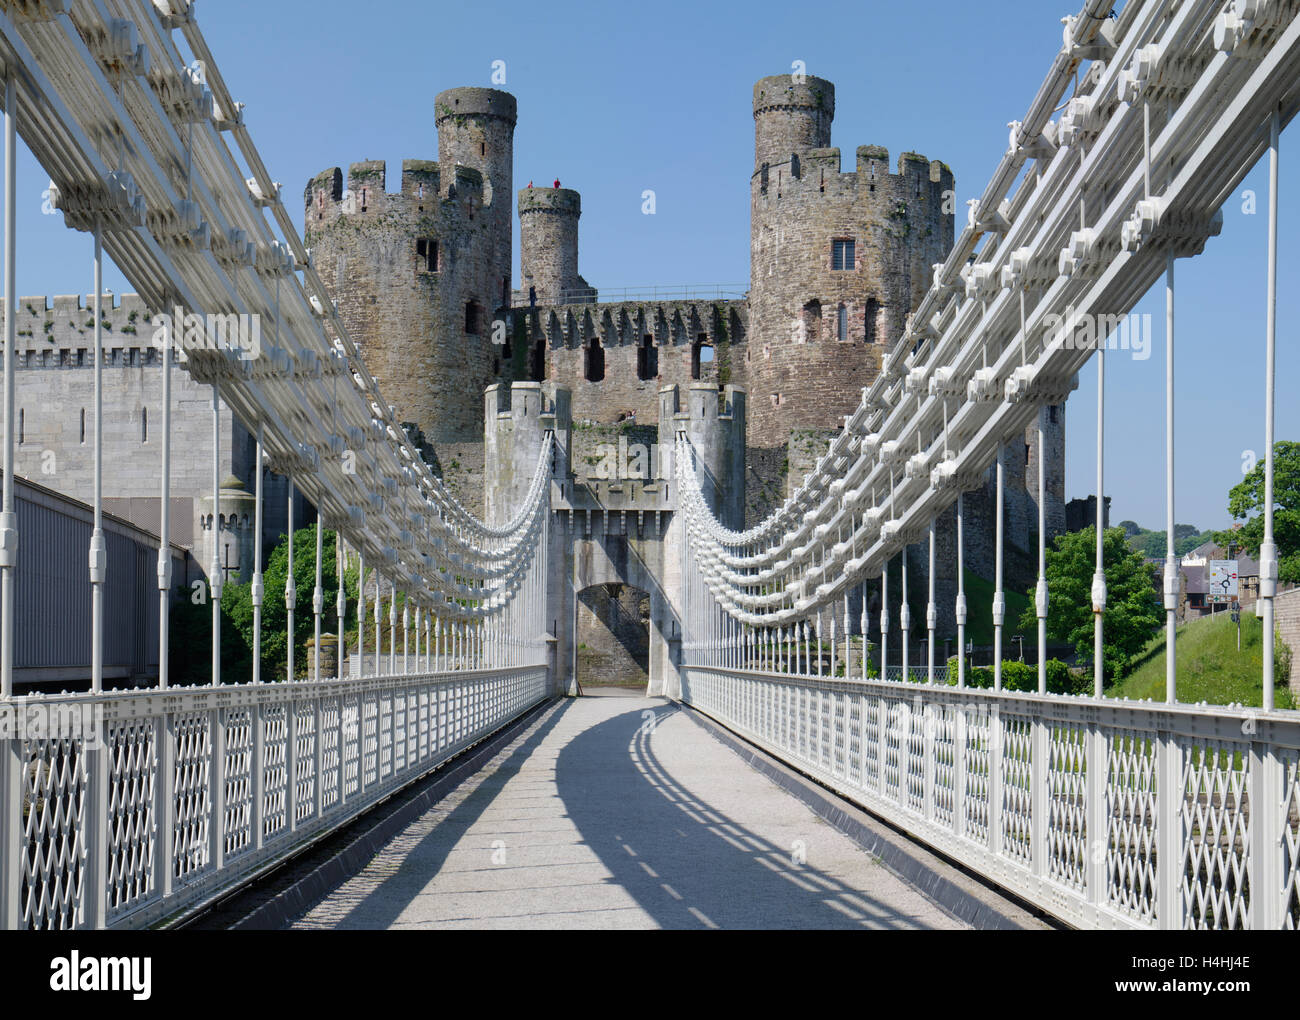 Suspension Bridge, Conwy Castle, North Wales Stock Photo